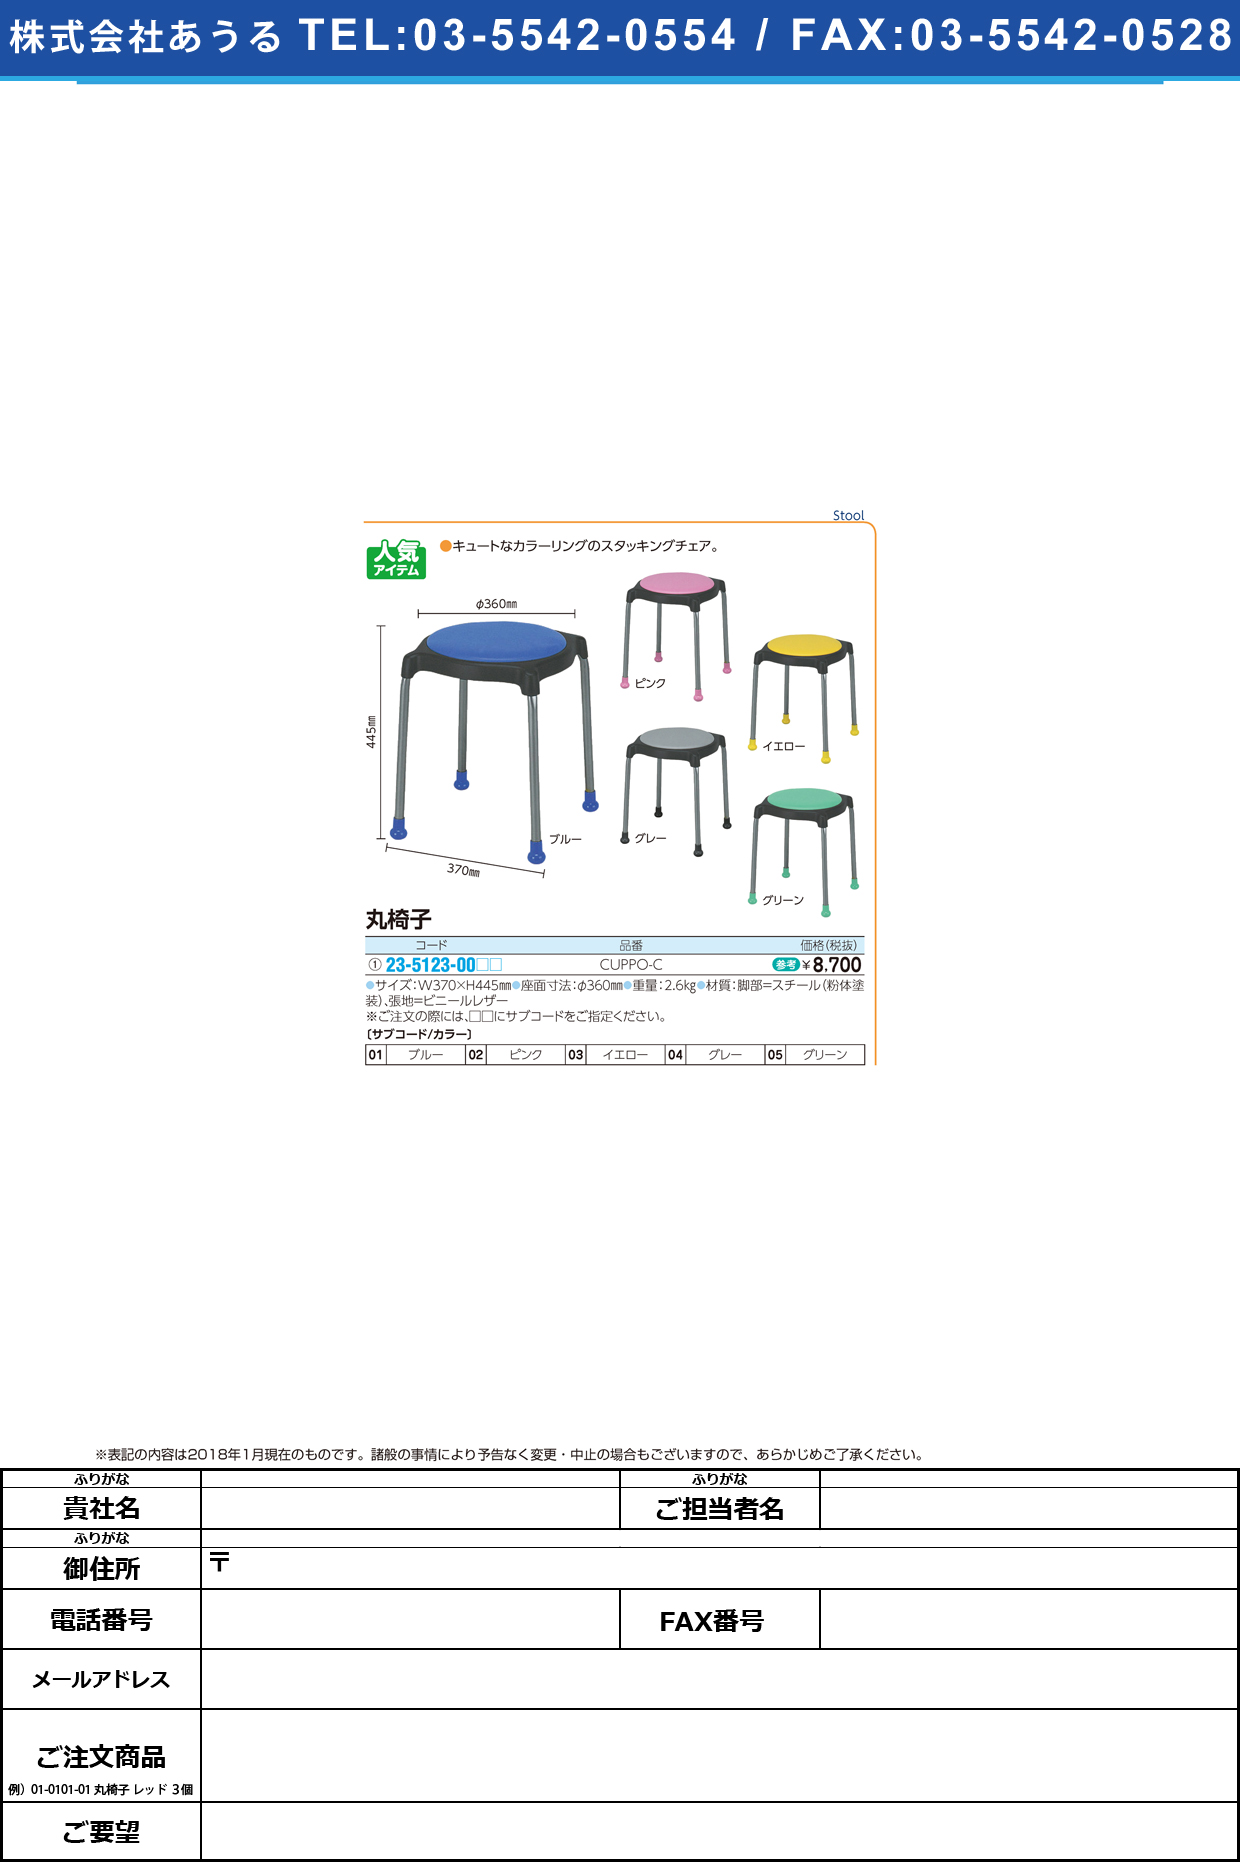 (23-5123-00)丸椅子 CUPPO-C(ﾚｻﾞｰ) ﾏﾙｲｽ ブルー【1台単位】【2019年カタログ商品】